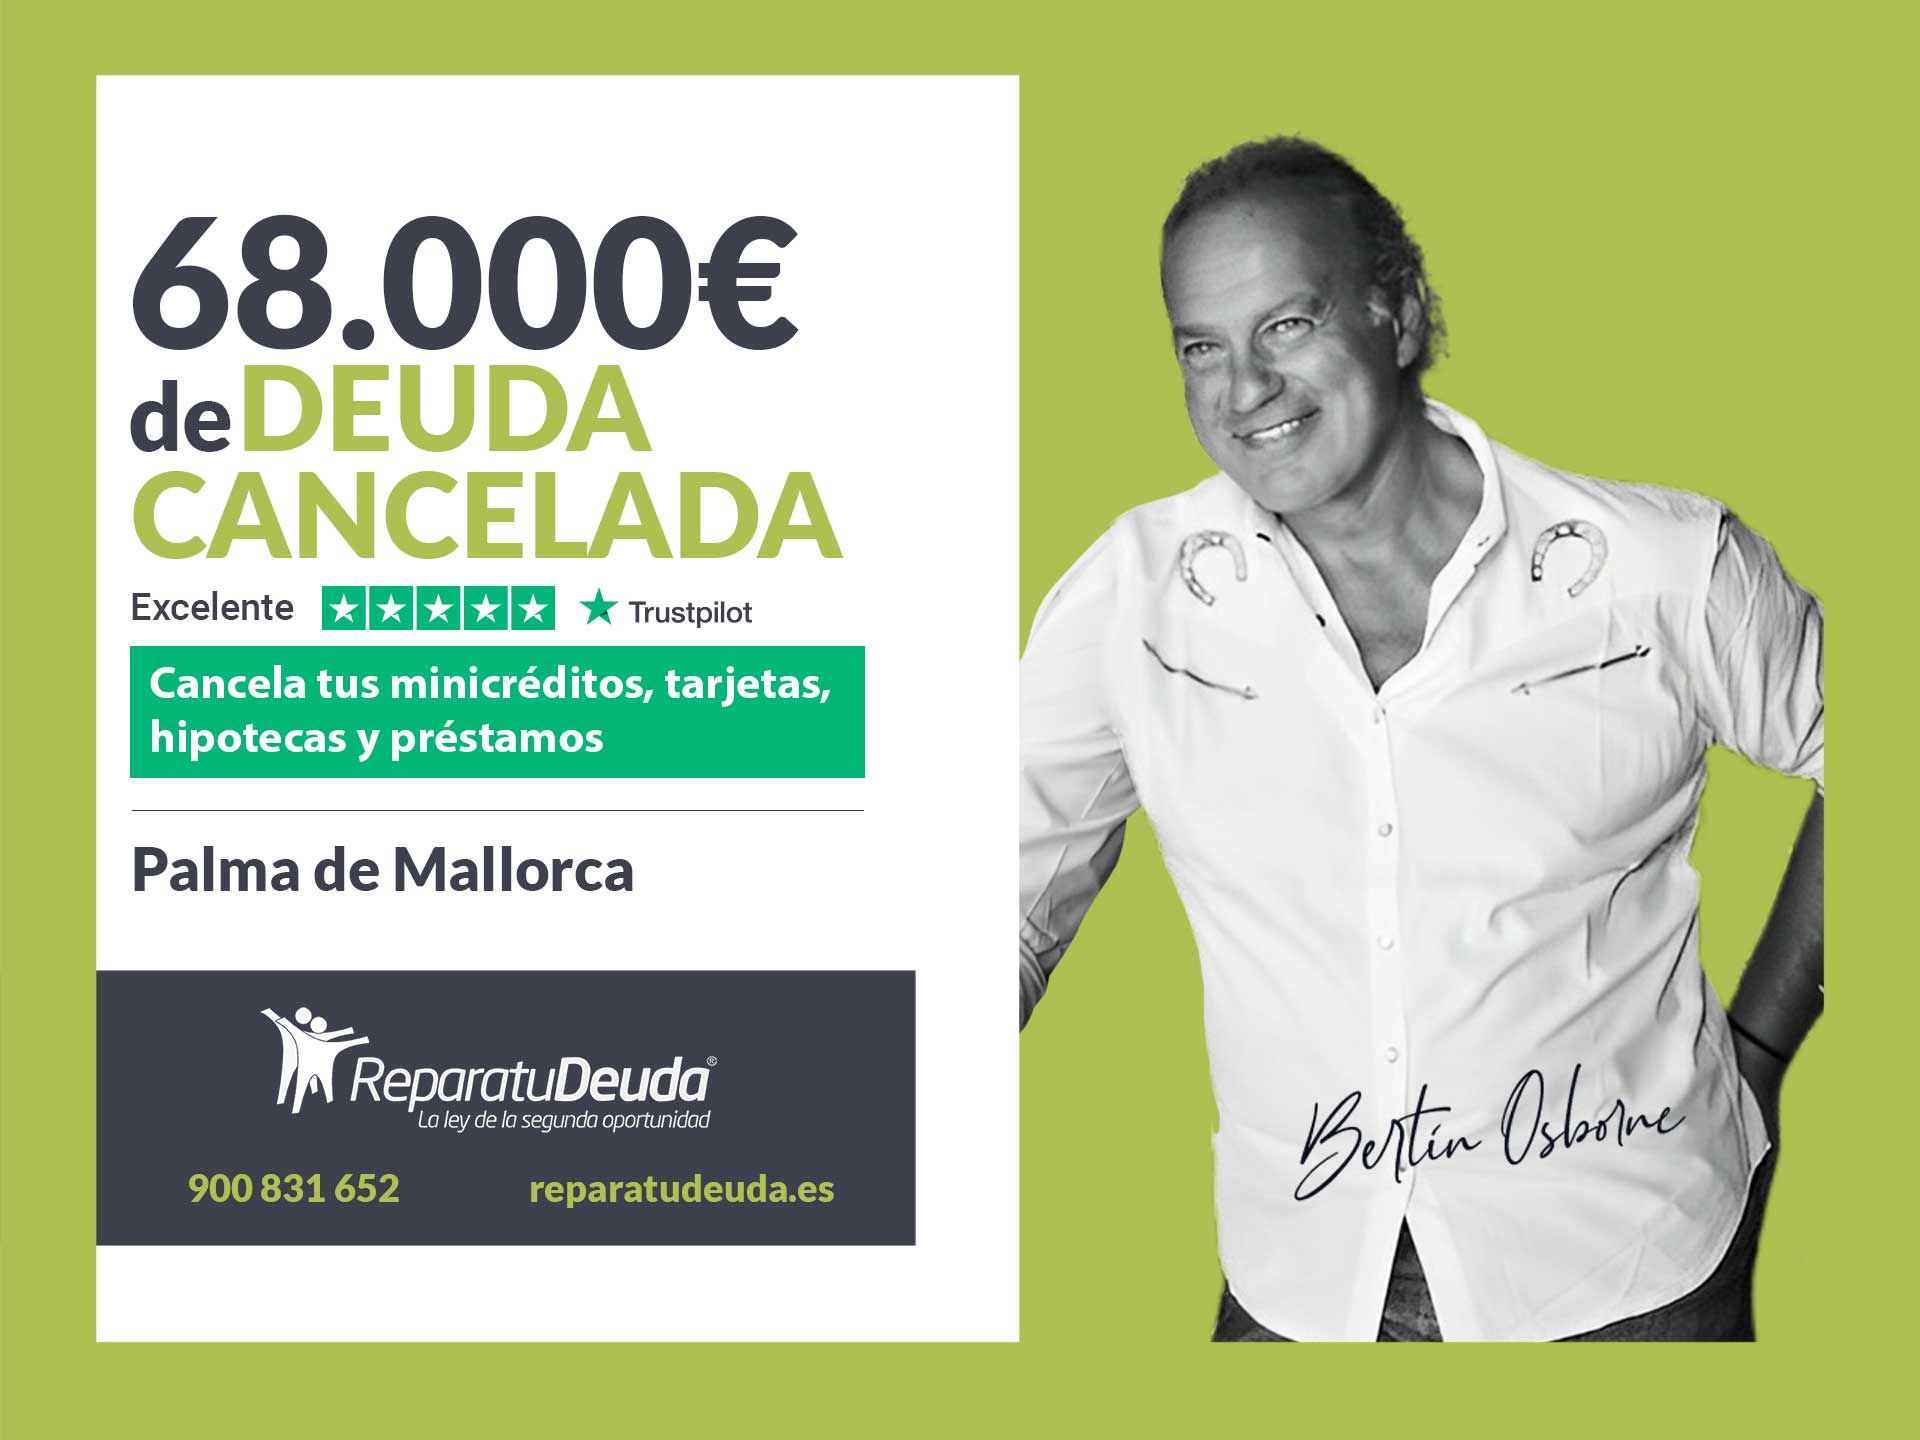 Repara tu Deuda Abogados cancela 68.000? en Palma de Mallorca (Baleares) con la Ley de Segunda Oportunidad